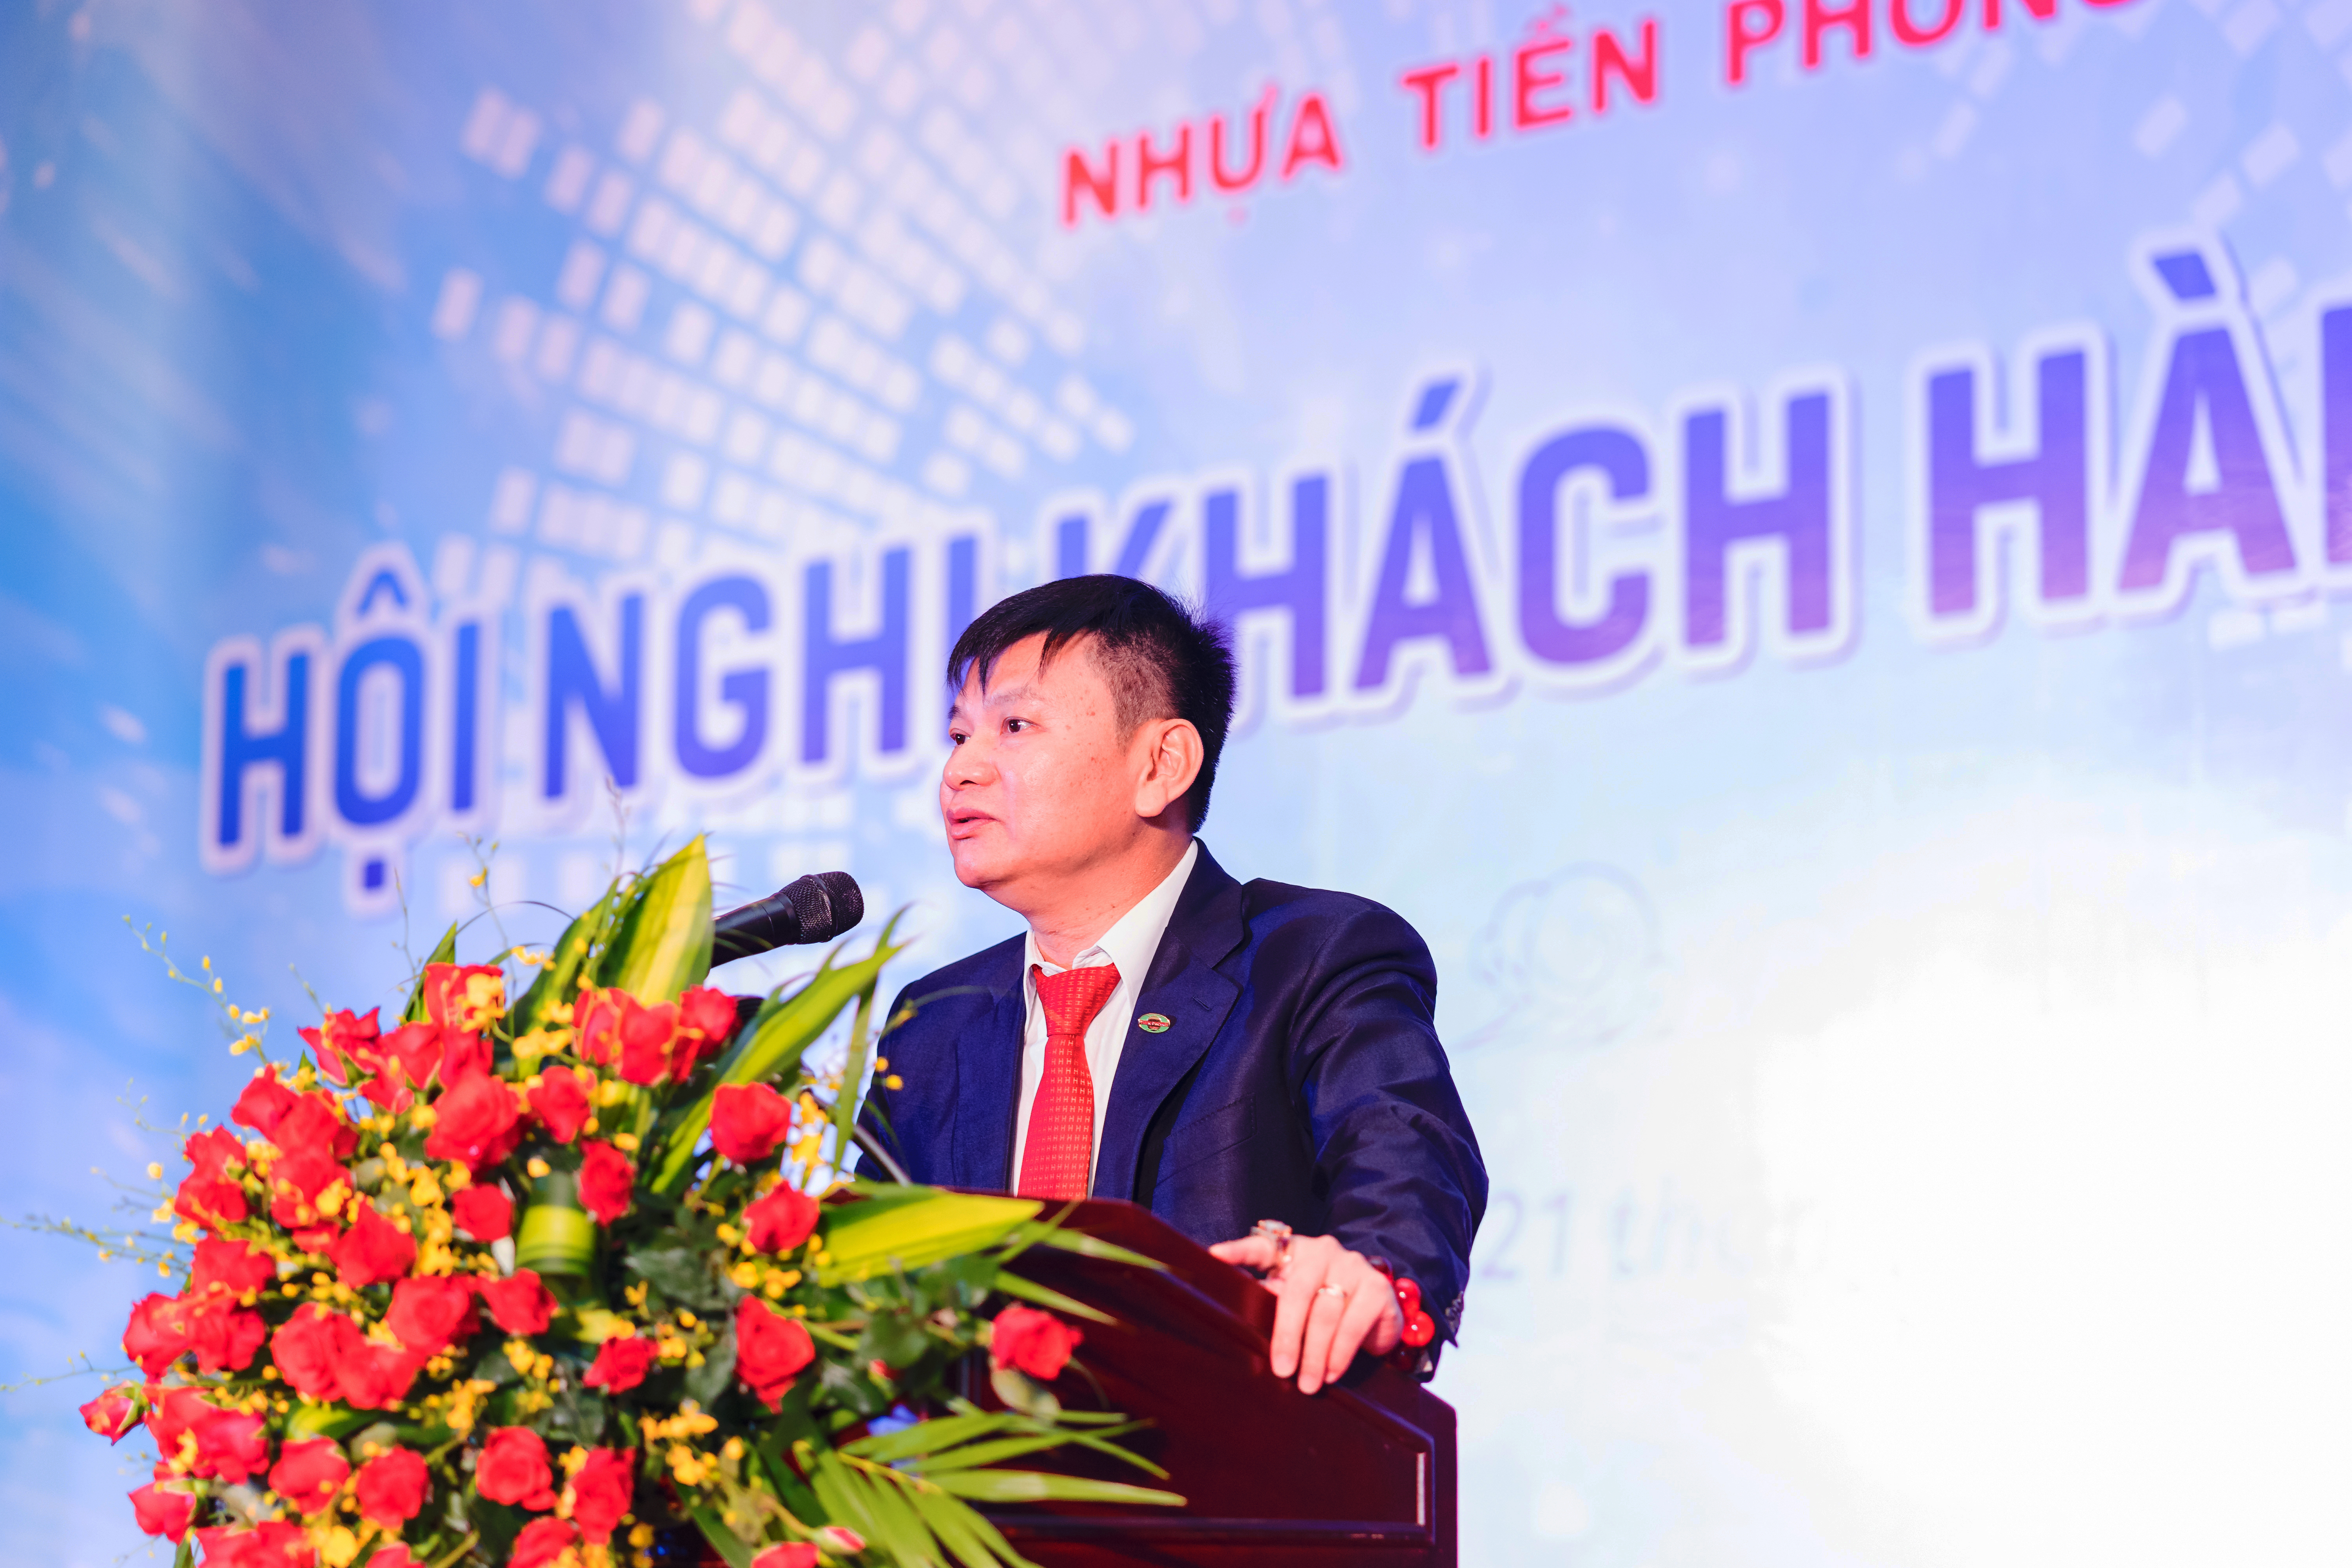 Hội nghị khách hàng Nhựa Tiền Phong 2019